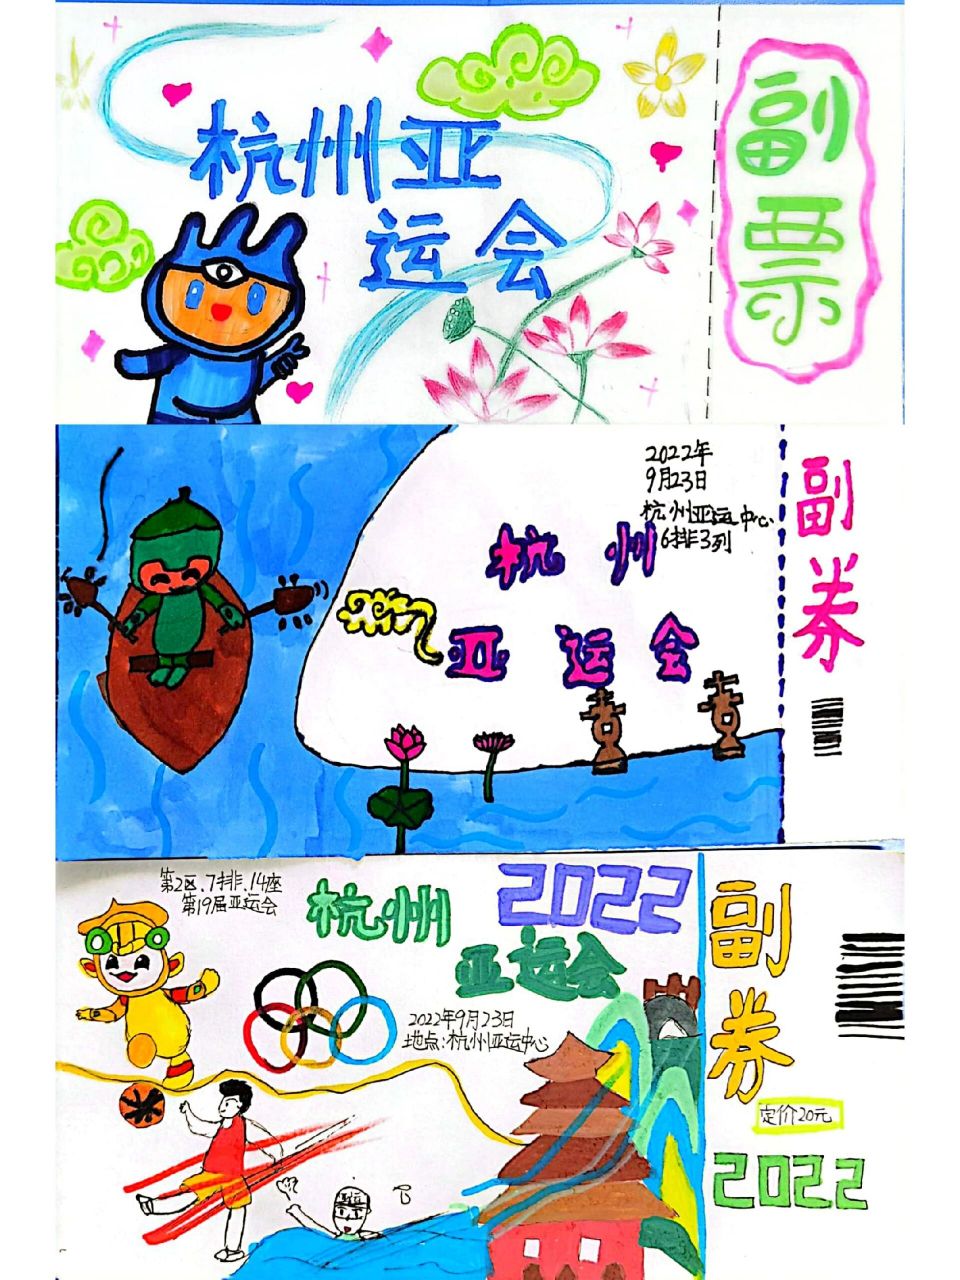 杭州亚运会门票设计图片